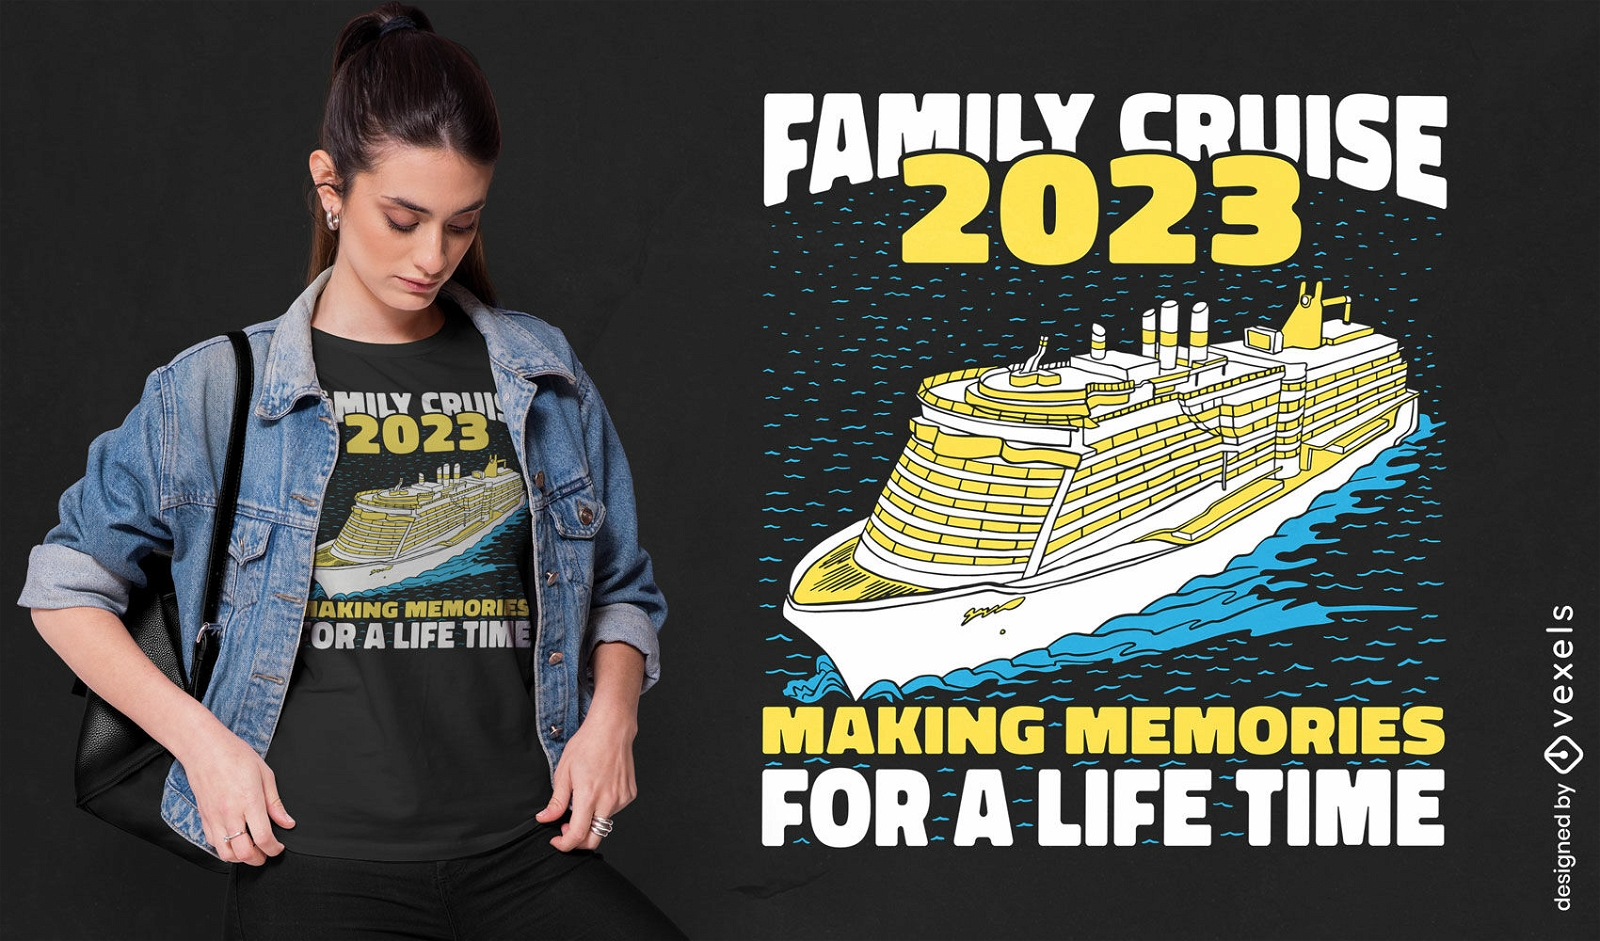 Diseño de camiseta de viaje de crucero familiar.